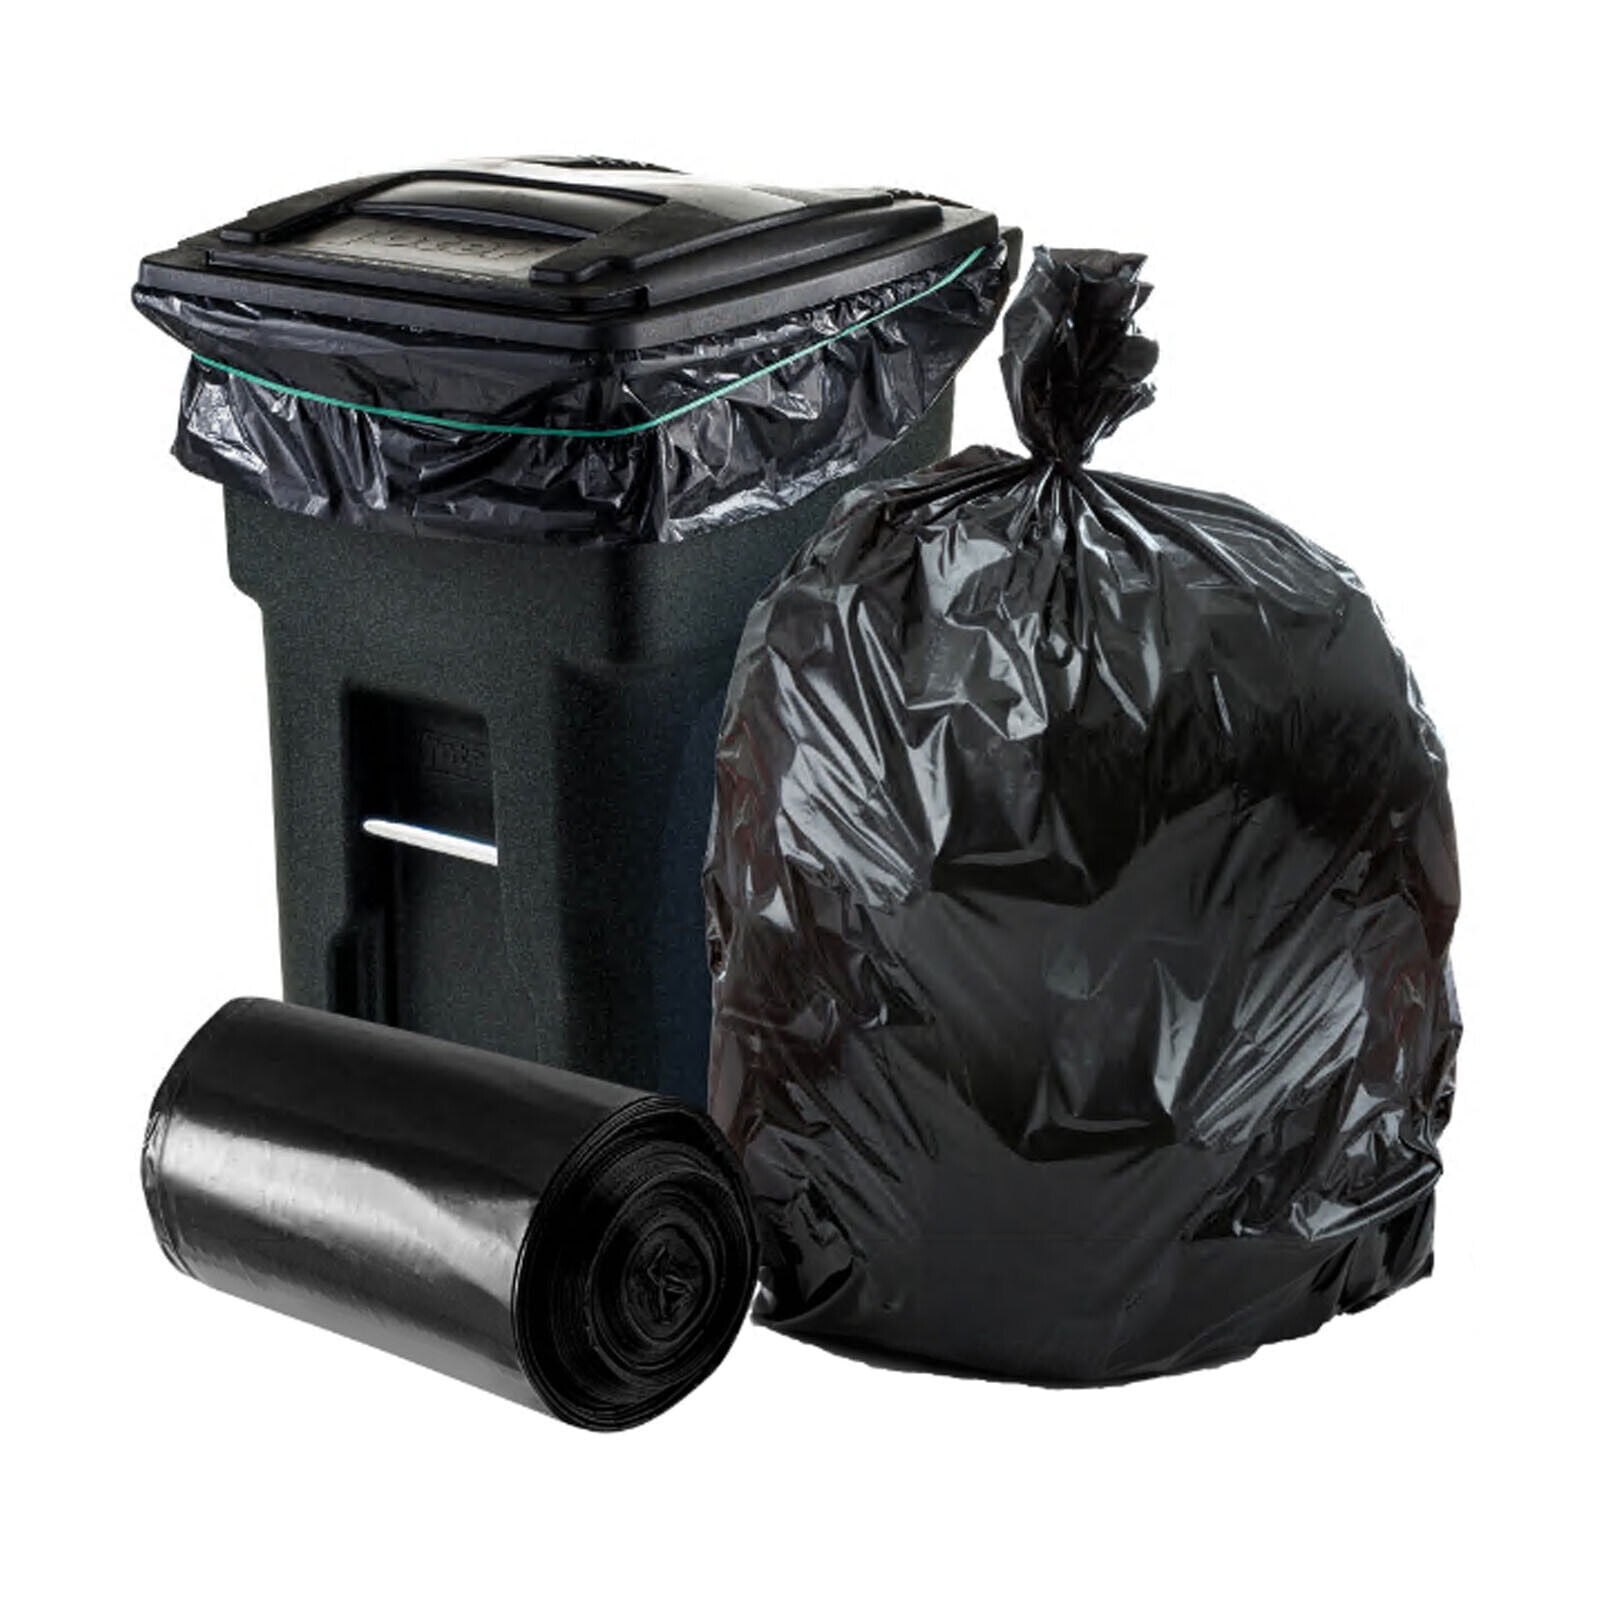 33 Gallon Black Repro Trash Bags - 2 Mil